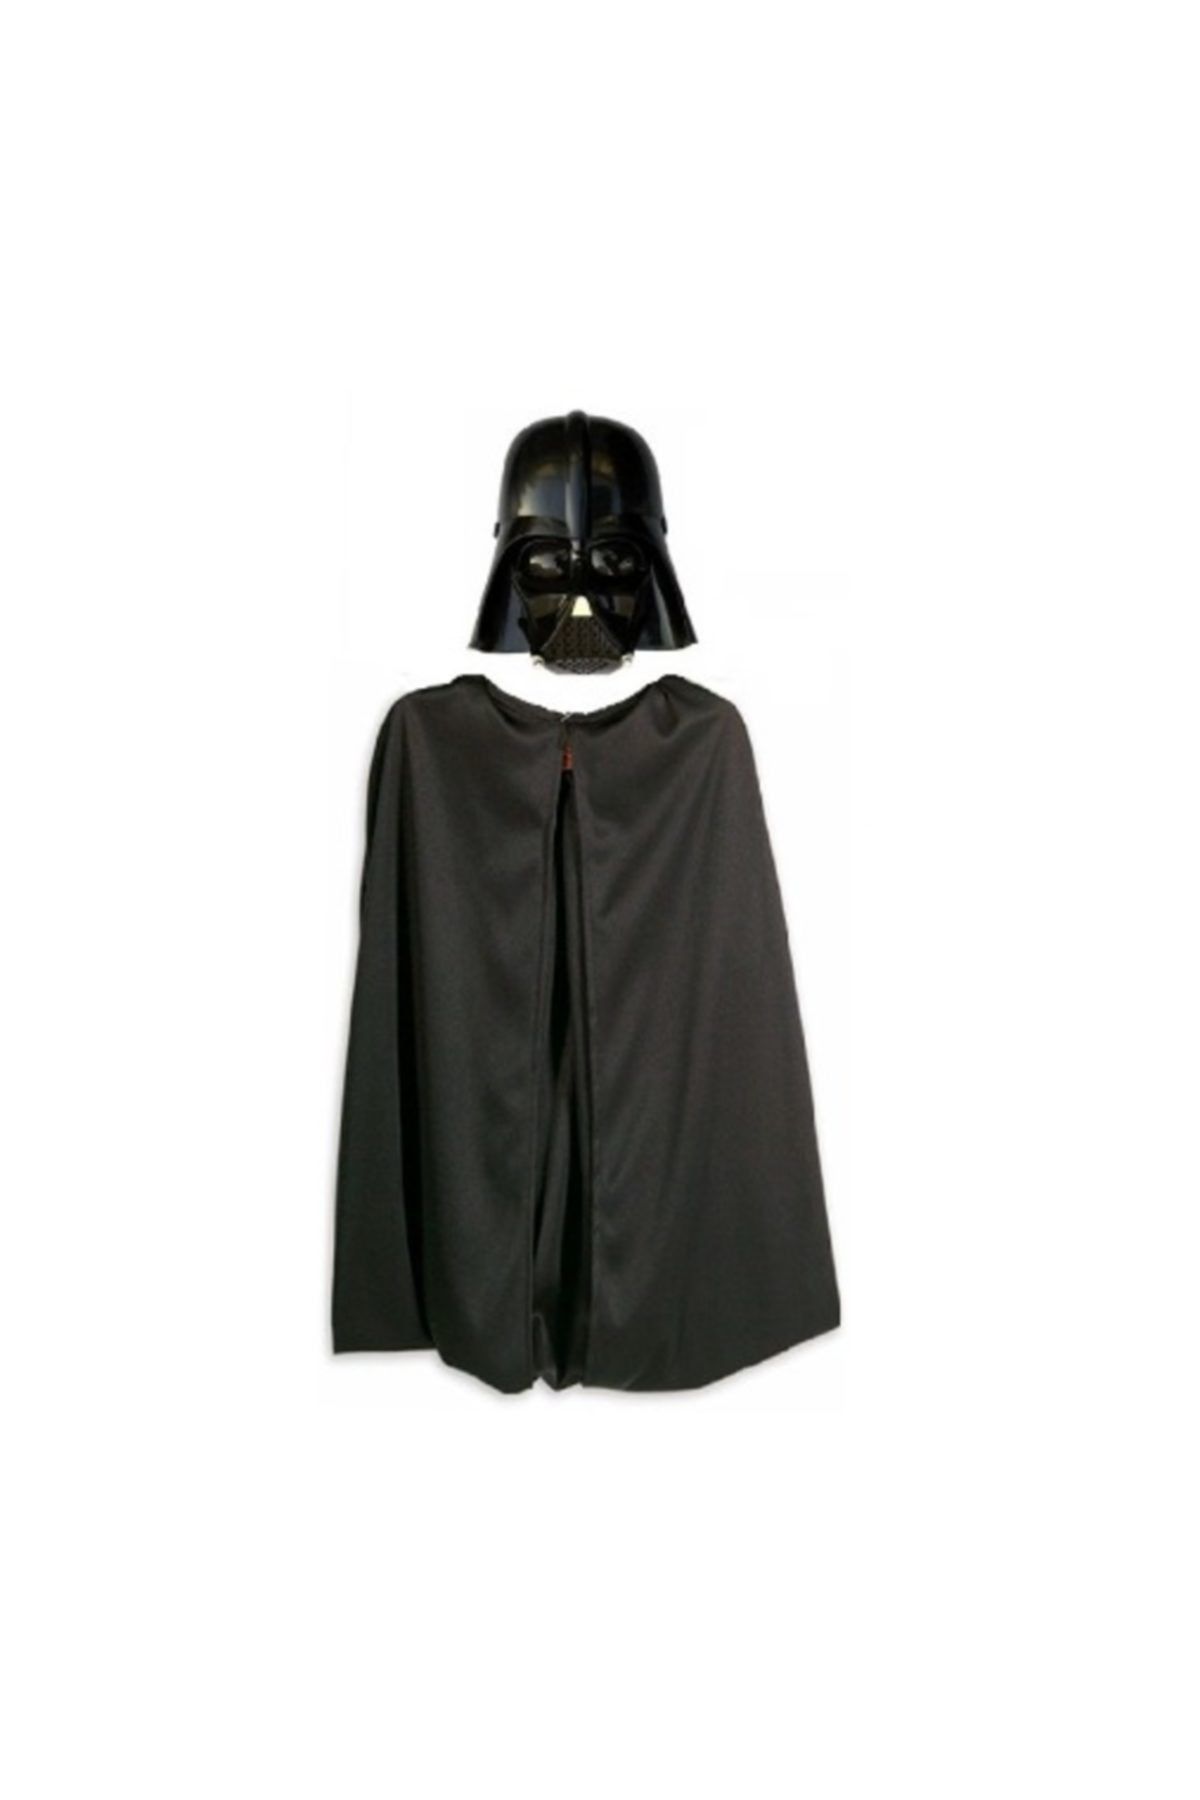 Samur Star Wars Darth Vader Maskesi Ve 90 Cm Pelerin Seti